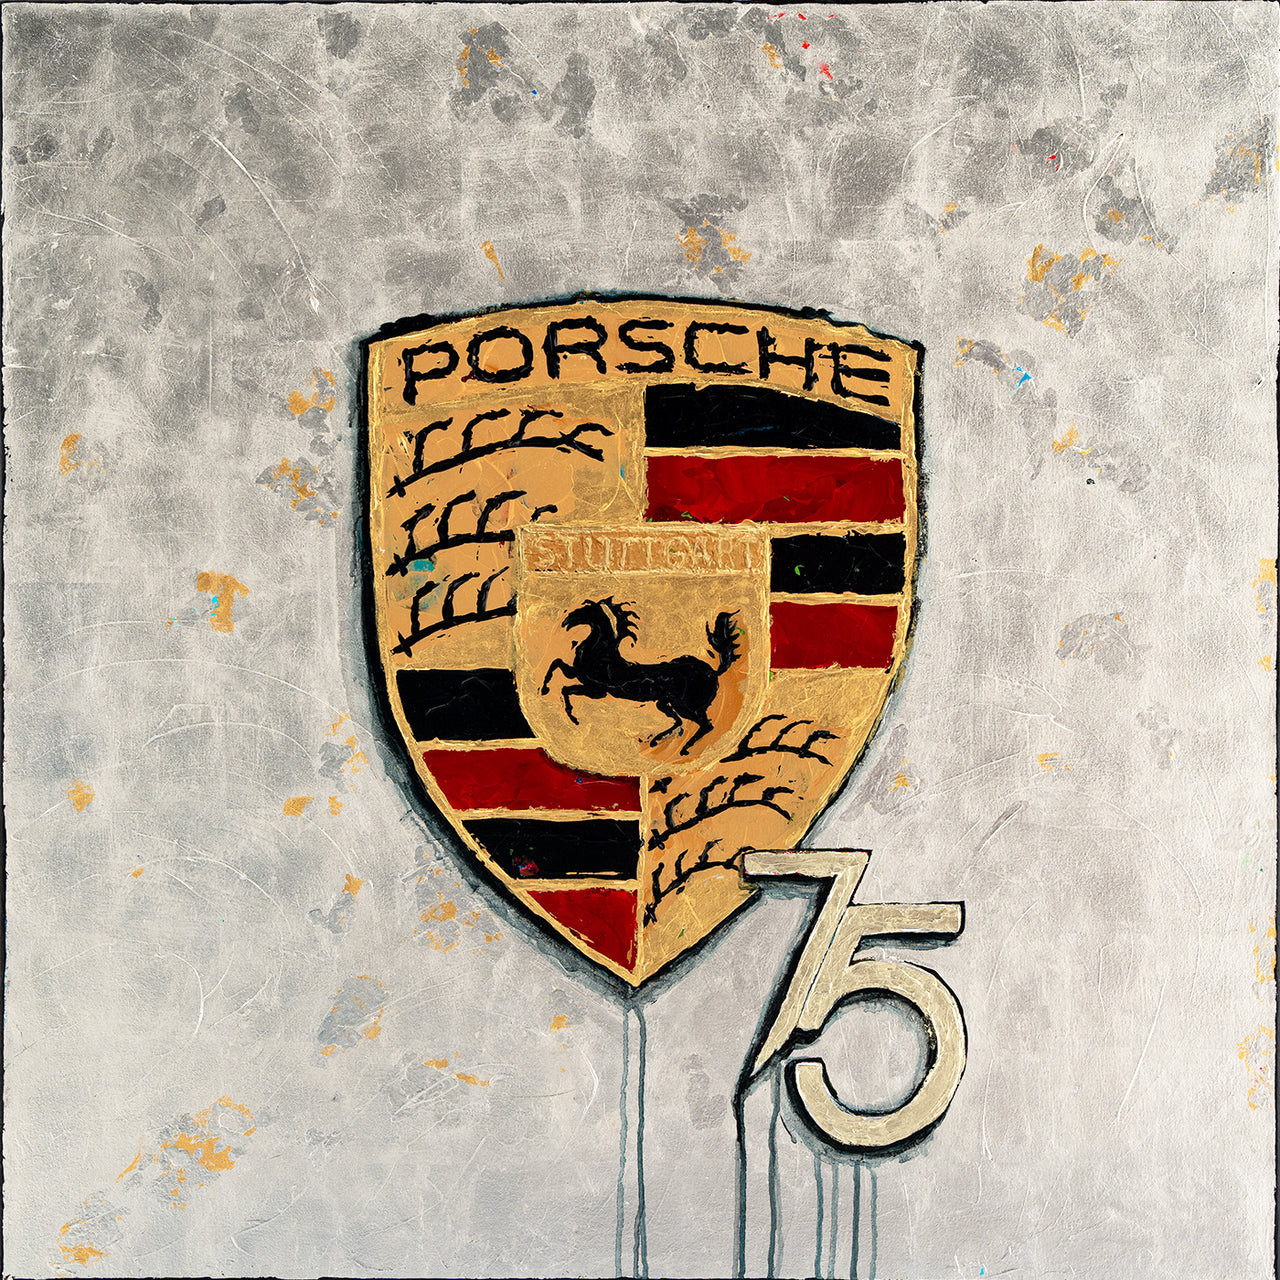 Porsche 75 - Gold "SPECIAL EDITION"